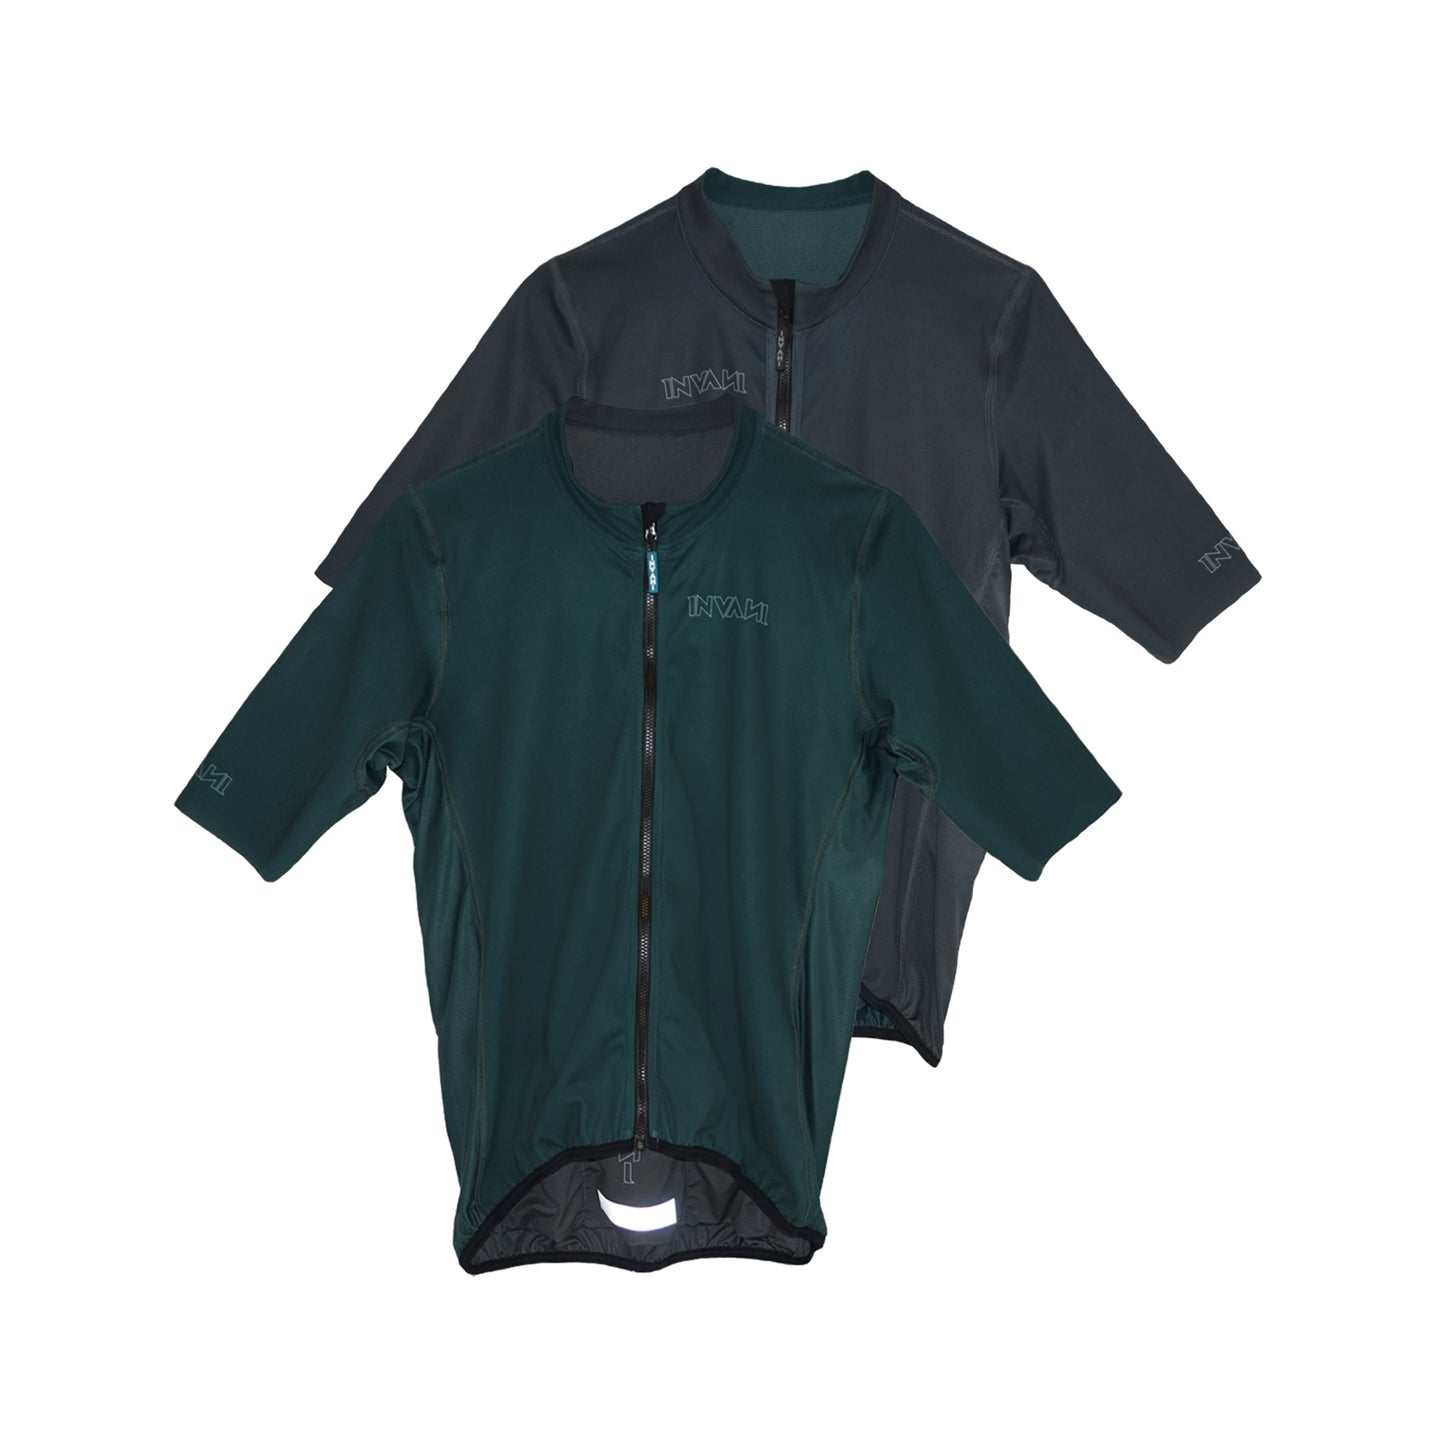 Regular Fit Reversible Jersey: Dark Green / Dark Grey (Men’s)